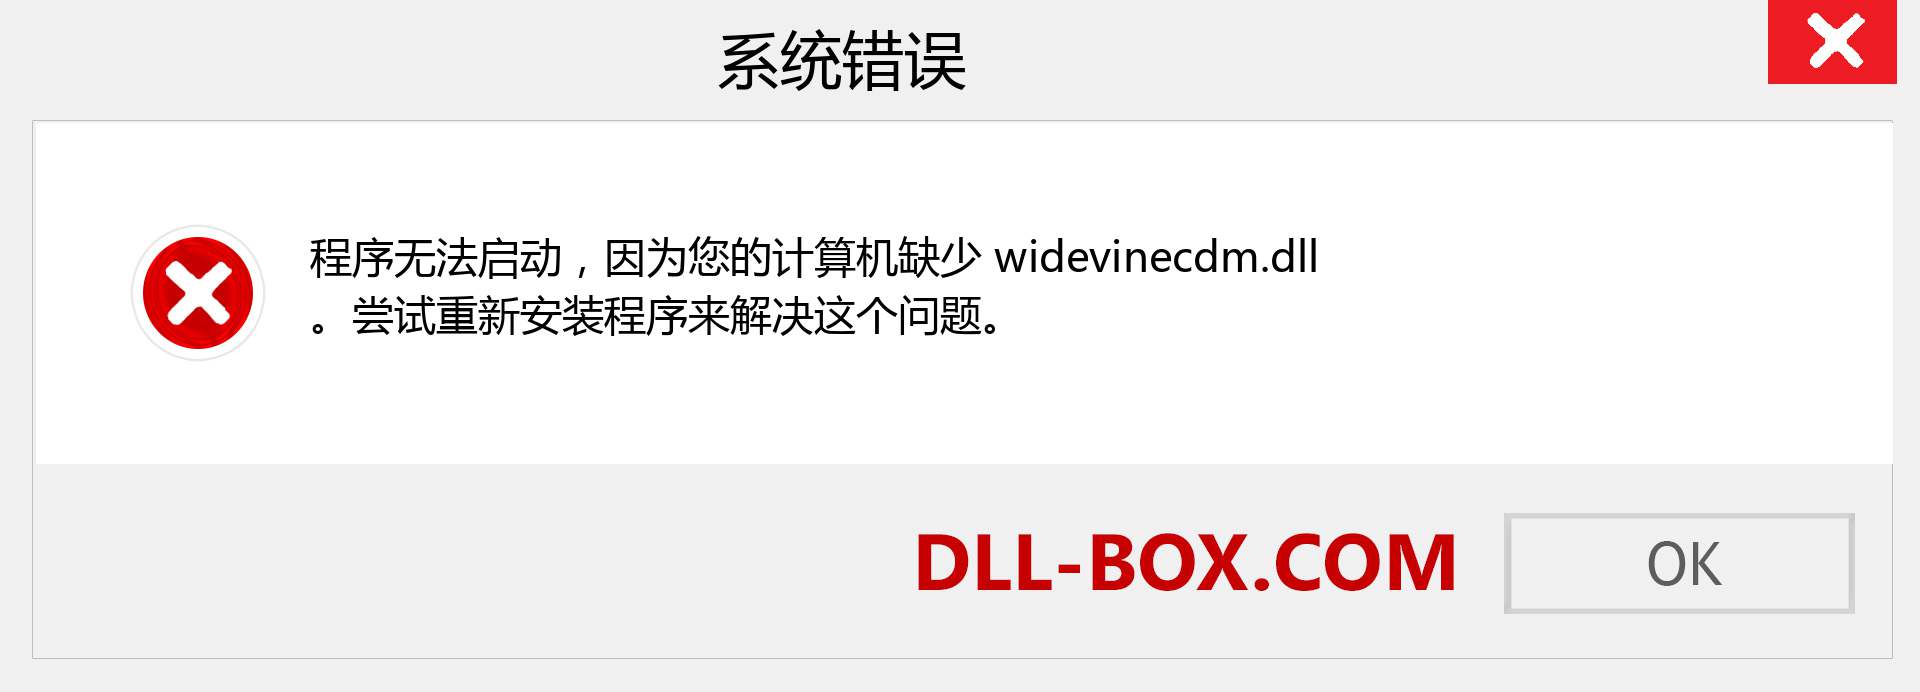 widevinecdm.dll 文件丢失？。 适用于 Windows 7、8、10 的下载 - 修复 Windows、照片、图像上的 widevinecdm dll 丢失错误